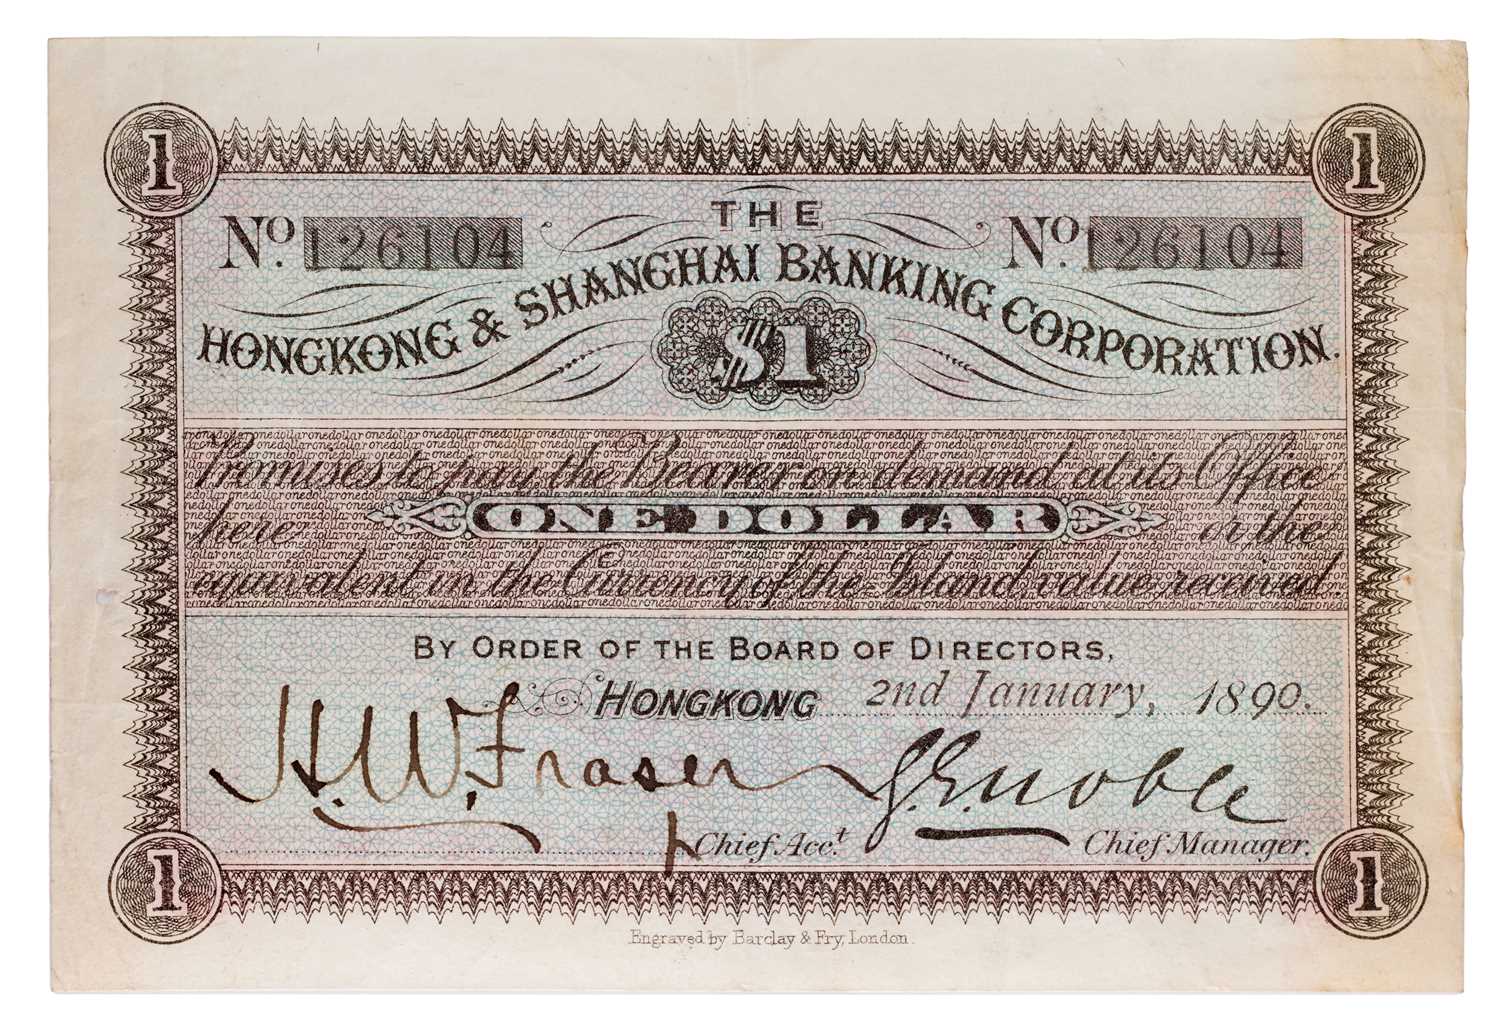 Hong Kong, Hong Kong and Shanghai Banking Corporation $1, 2nd January 1890, serial number 126104,